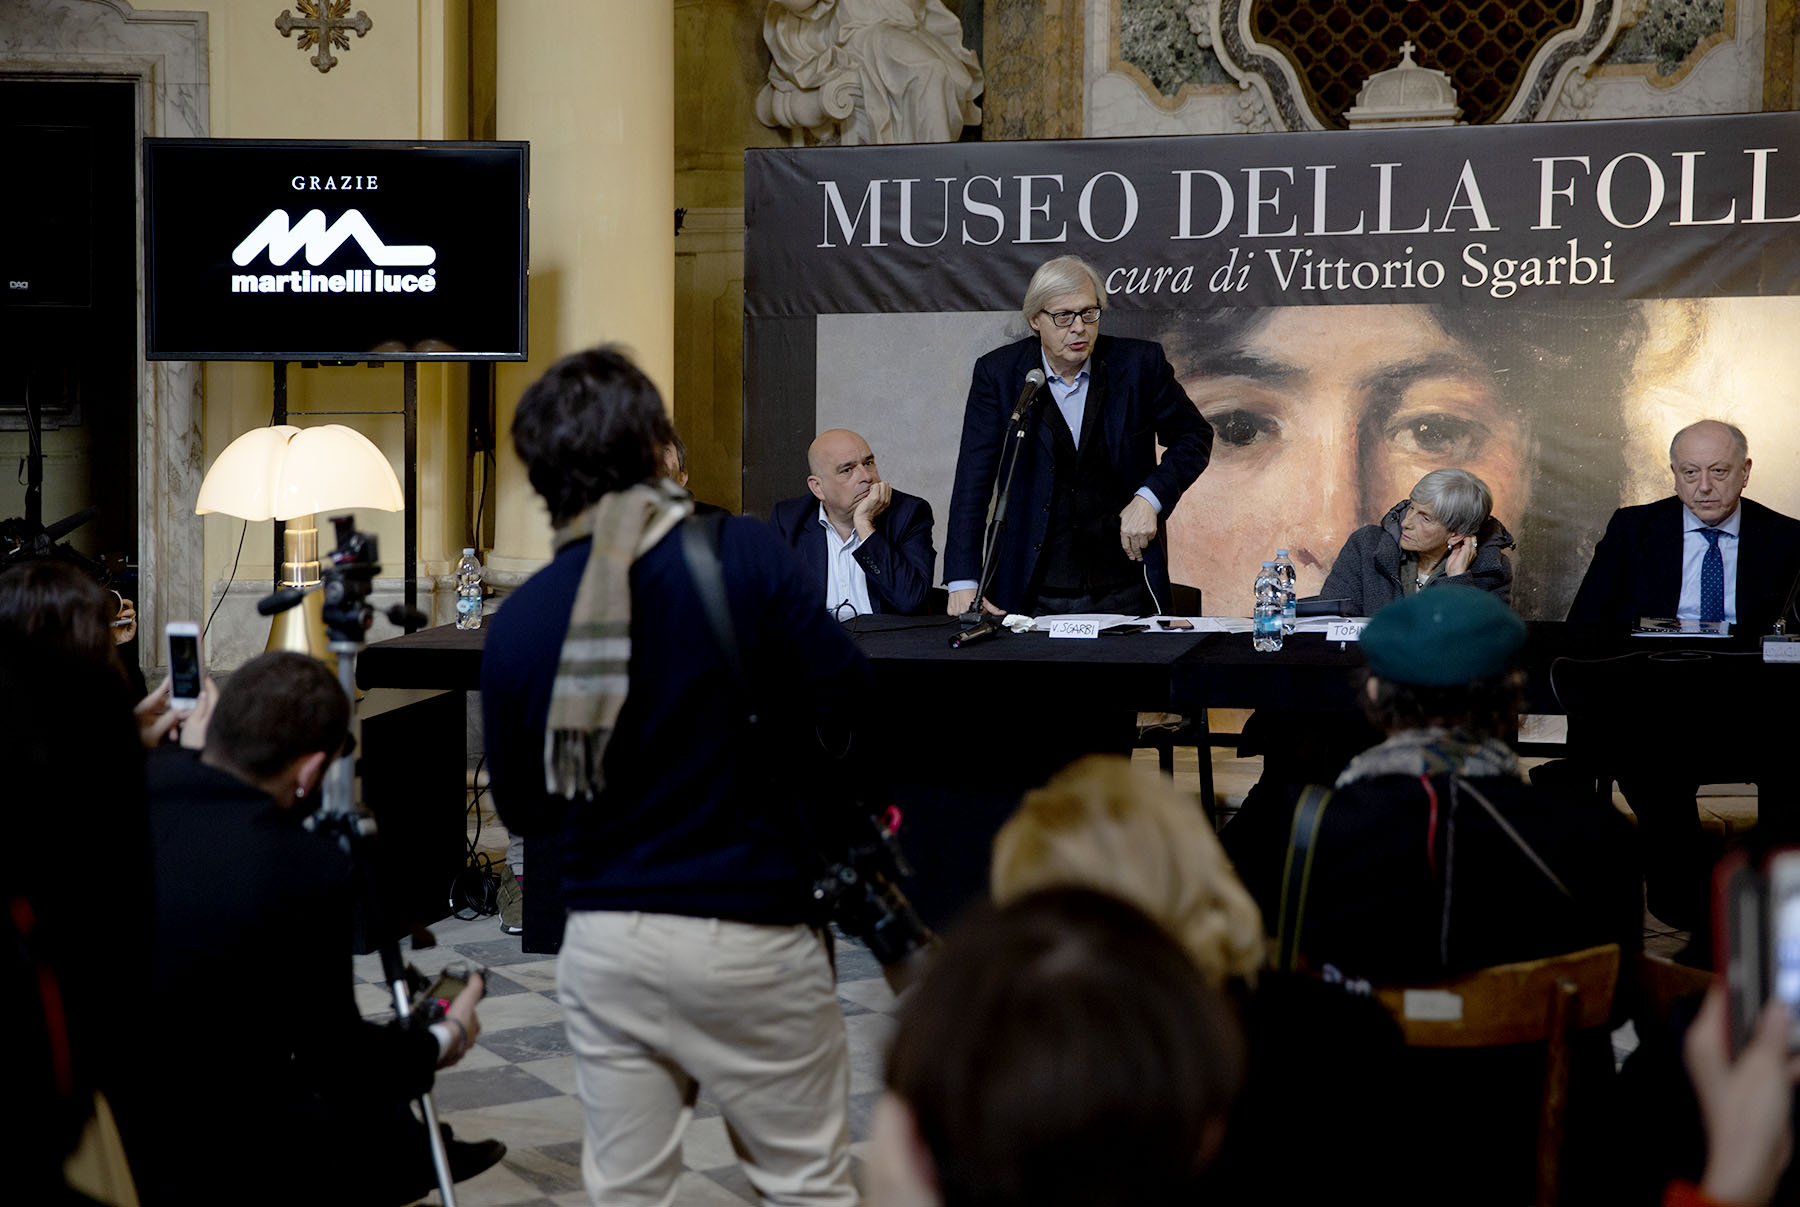 Martinelli Luce illuminates the Museo della Follia di Lucca, a new step in the itinerant project by Vittorio Sgarbi